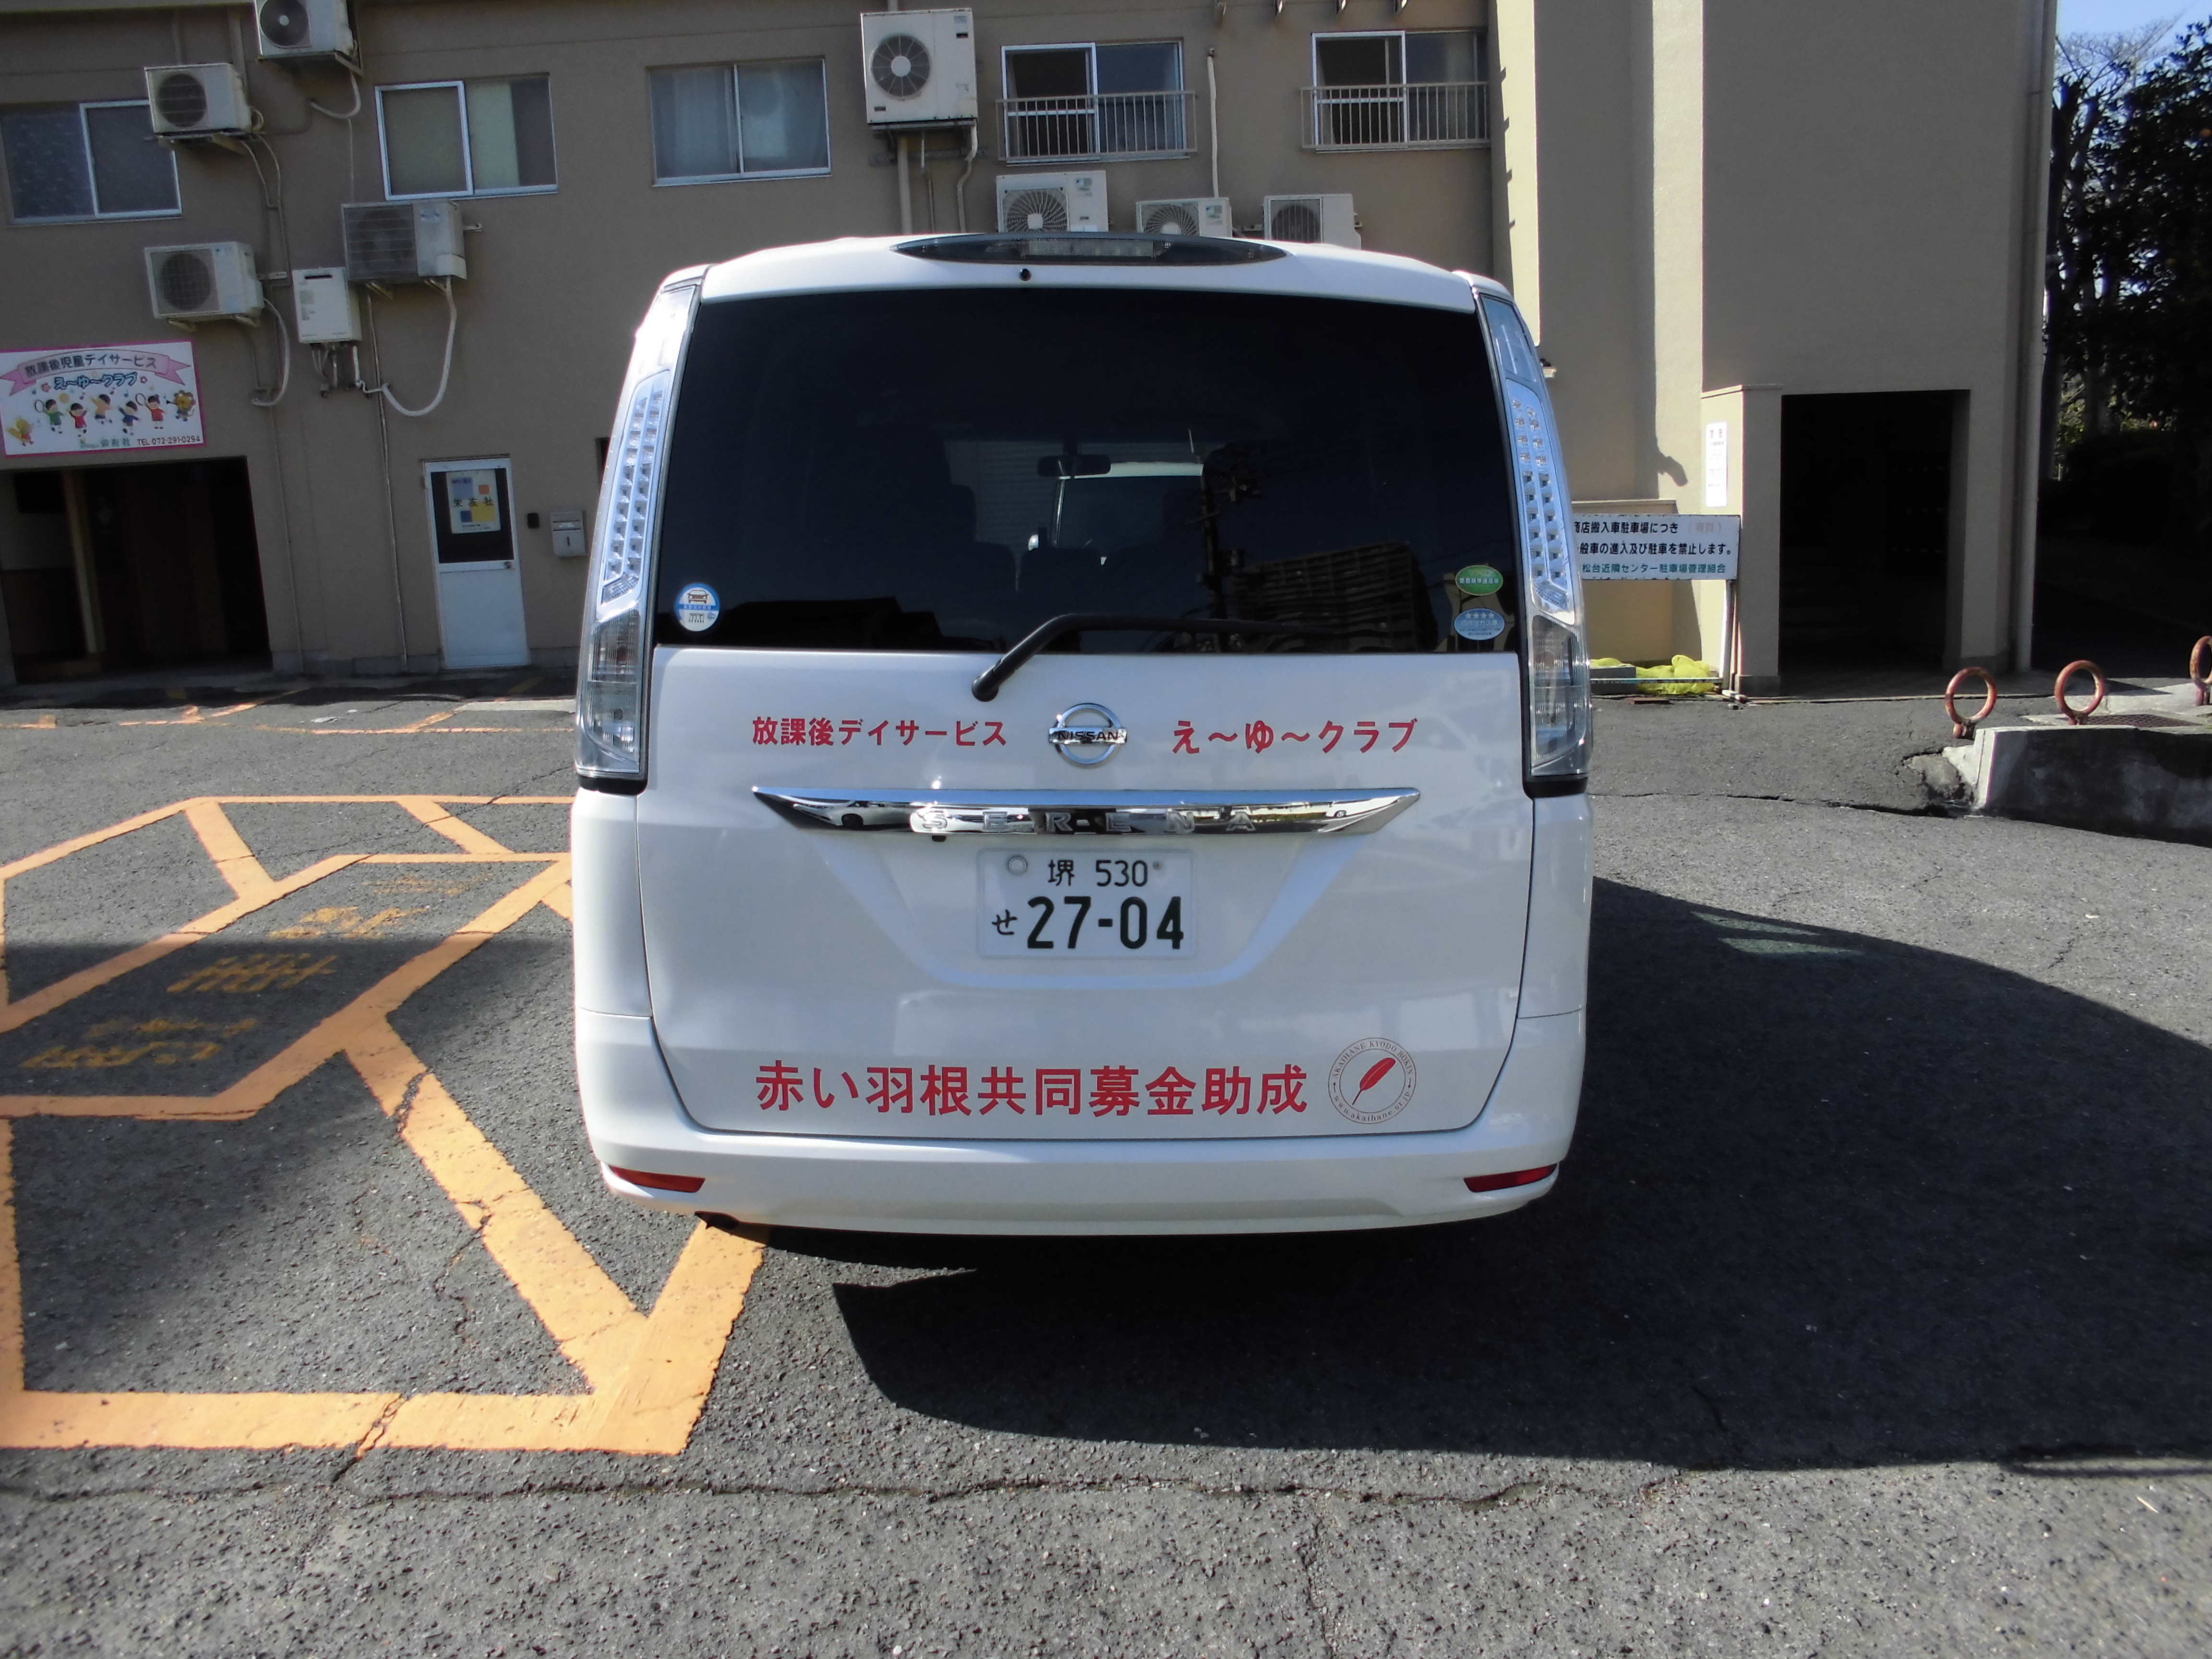 堺市南区の運転手 送迎ドライバー パート アルバイト えーゆークラブ 送迎業務の募集です 一緒に頑張りましょう 介護求人ネット 介護求人ネット